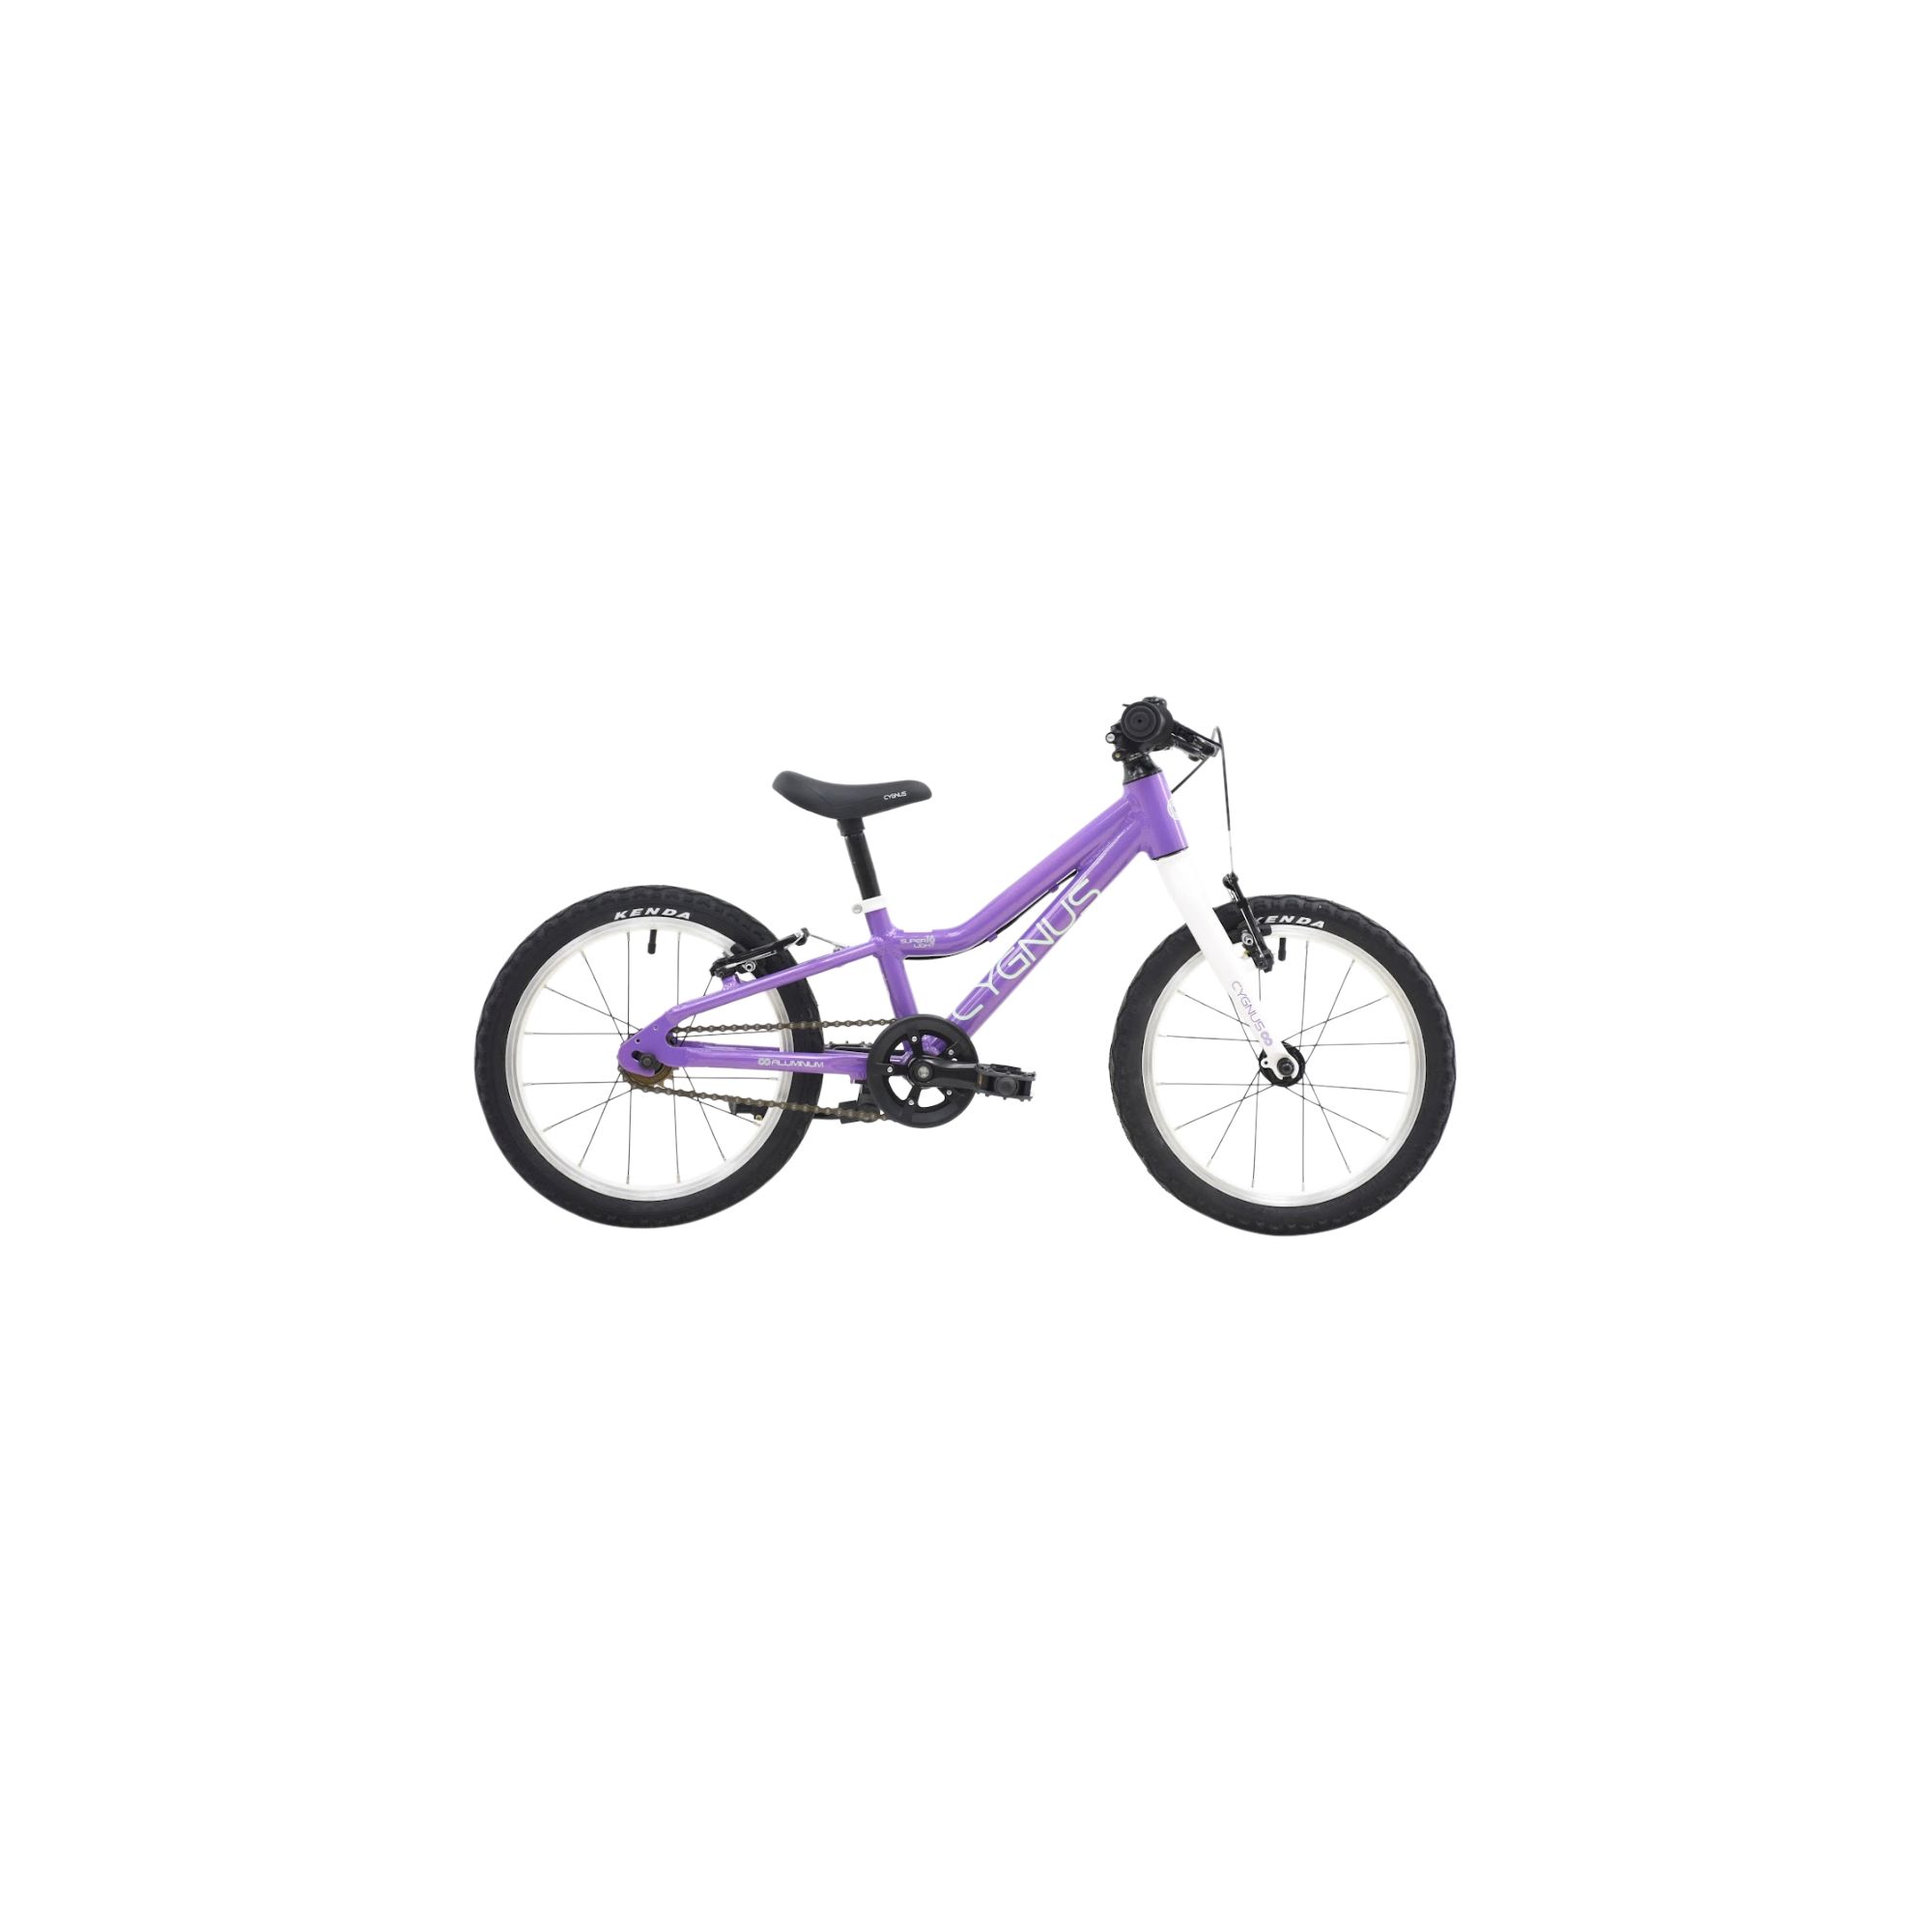 Super Light 16 violet biciclete imagine 2022